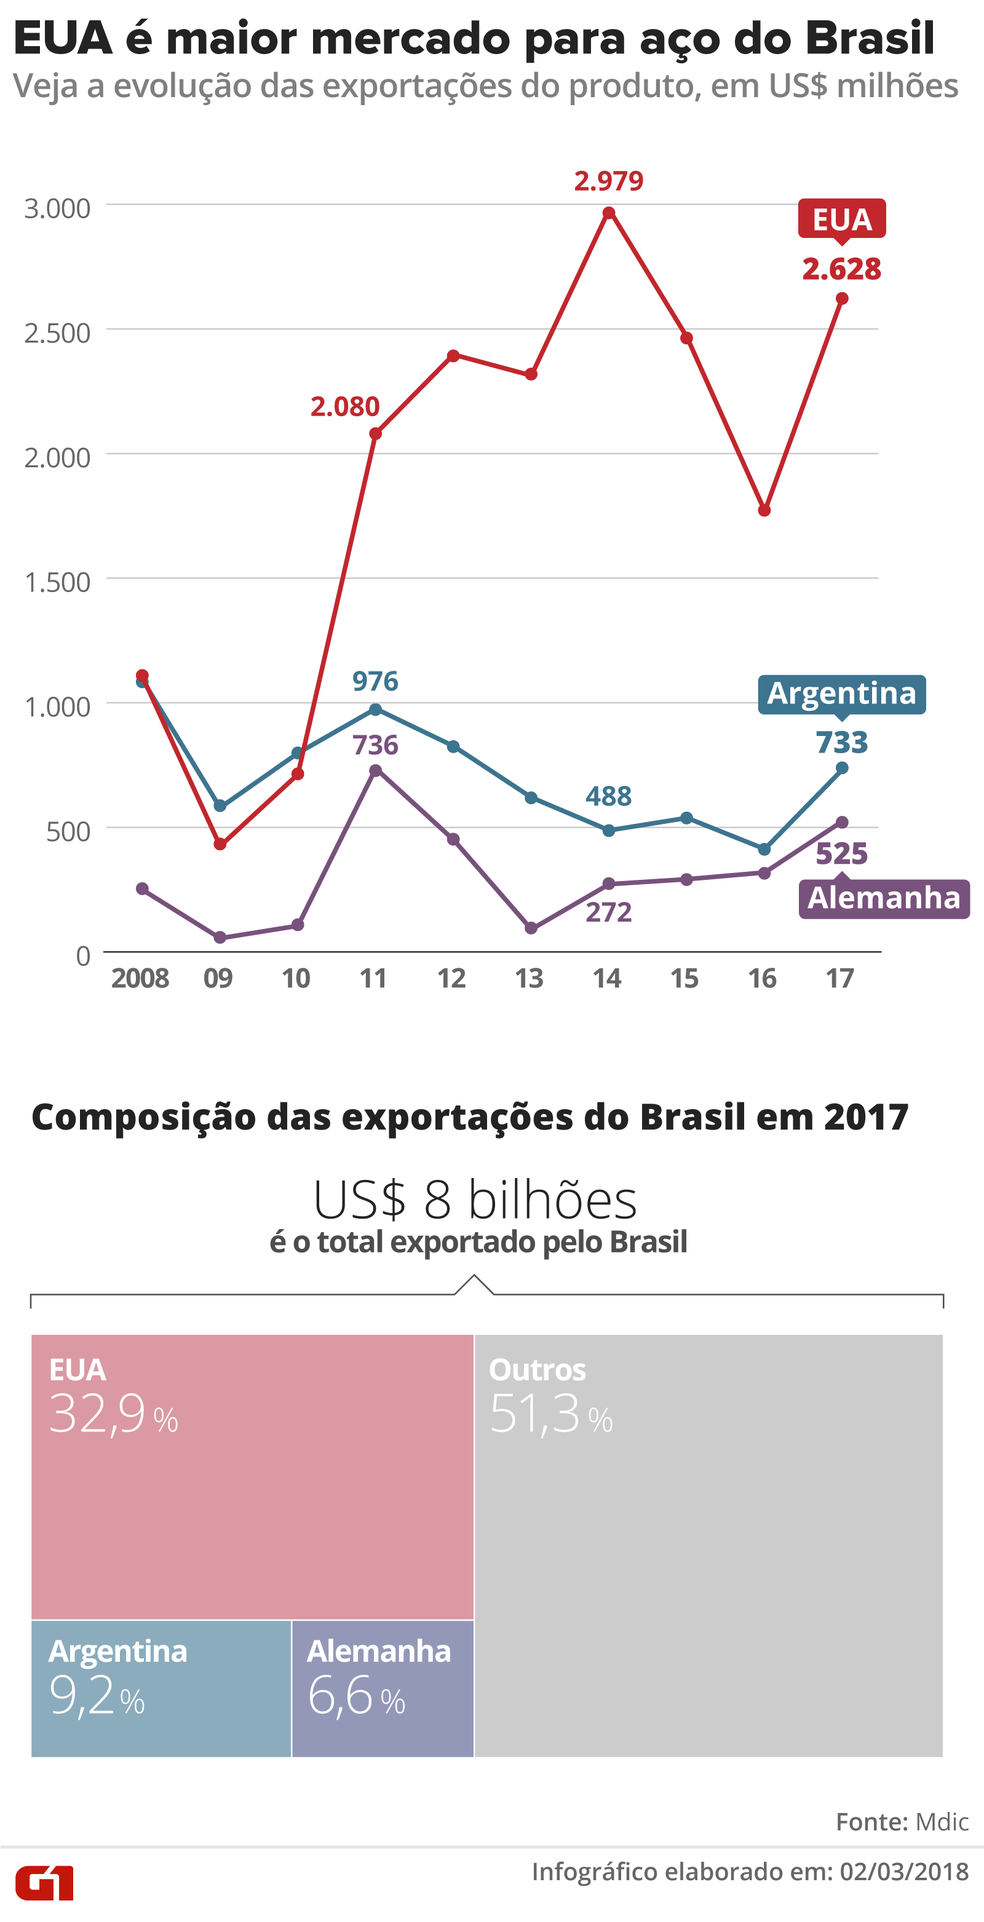 eua e maior mercado para aco do brasil - EUA interrompem negociação e decidem aplicar medidas restritivas sobre aço e alumínio brasileiro, diz governo